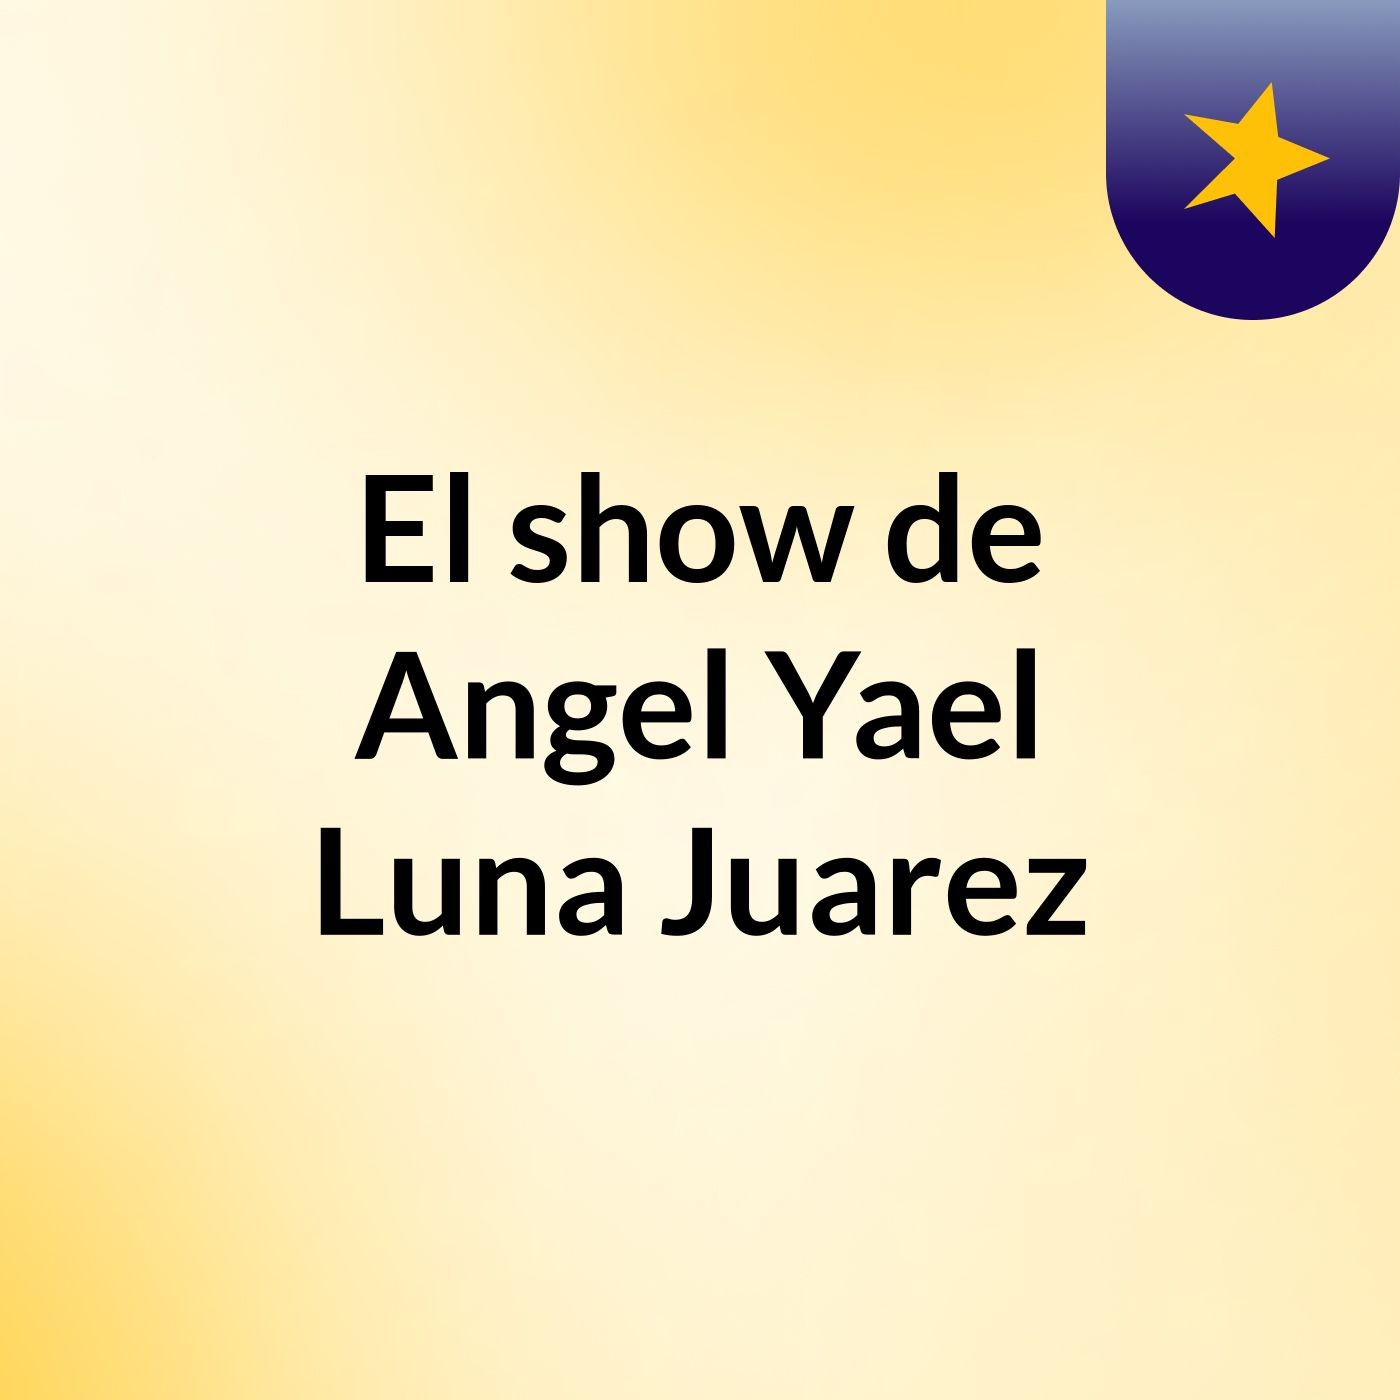 El show de Angel Yael Luna Juarez